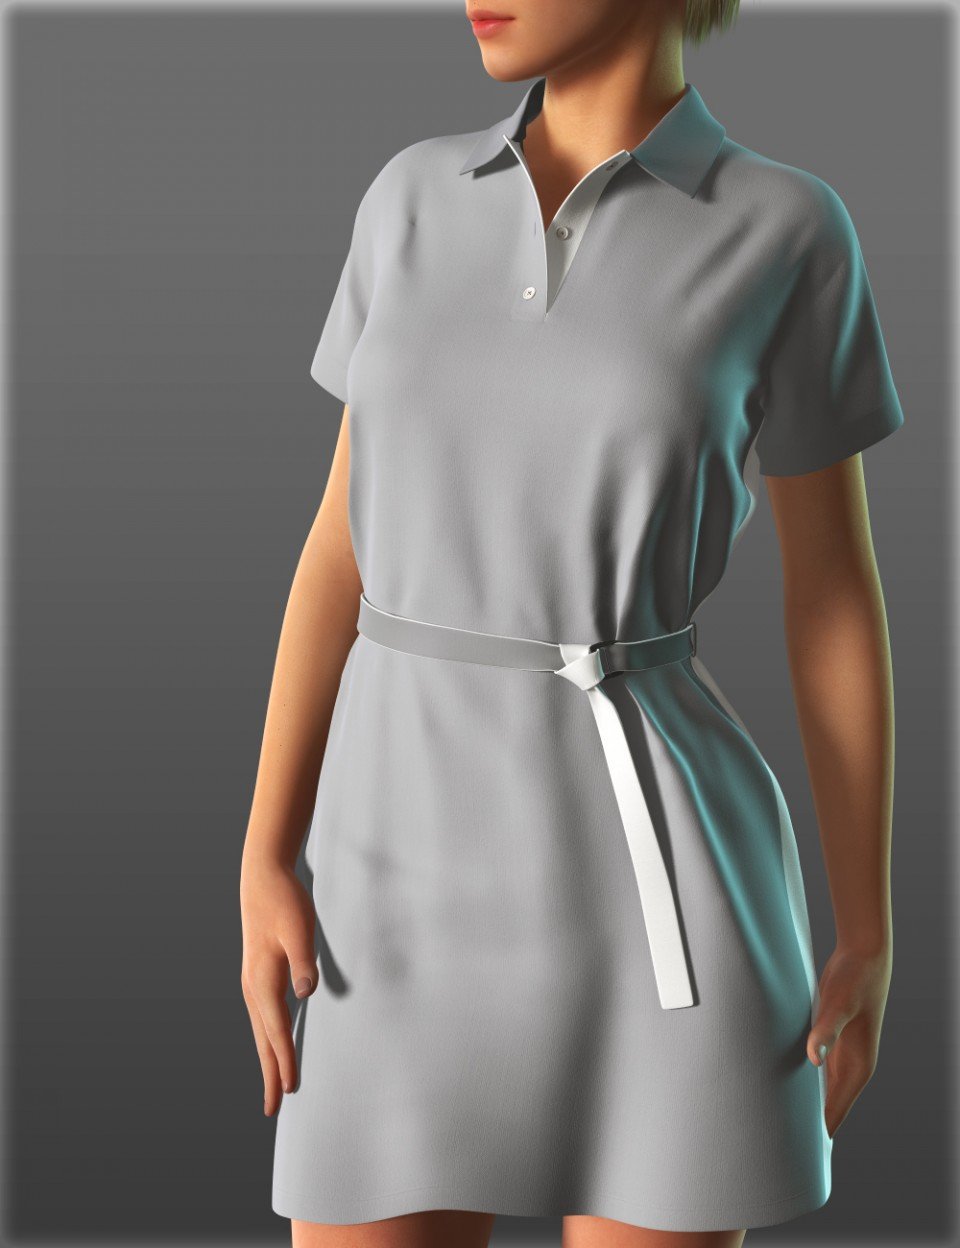 Short Sleeve Shirt Dresses for Genesis 2 Female(s)_DAZ3D下载站